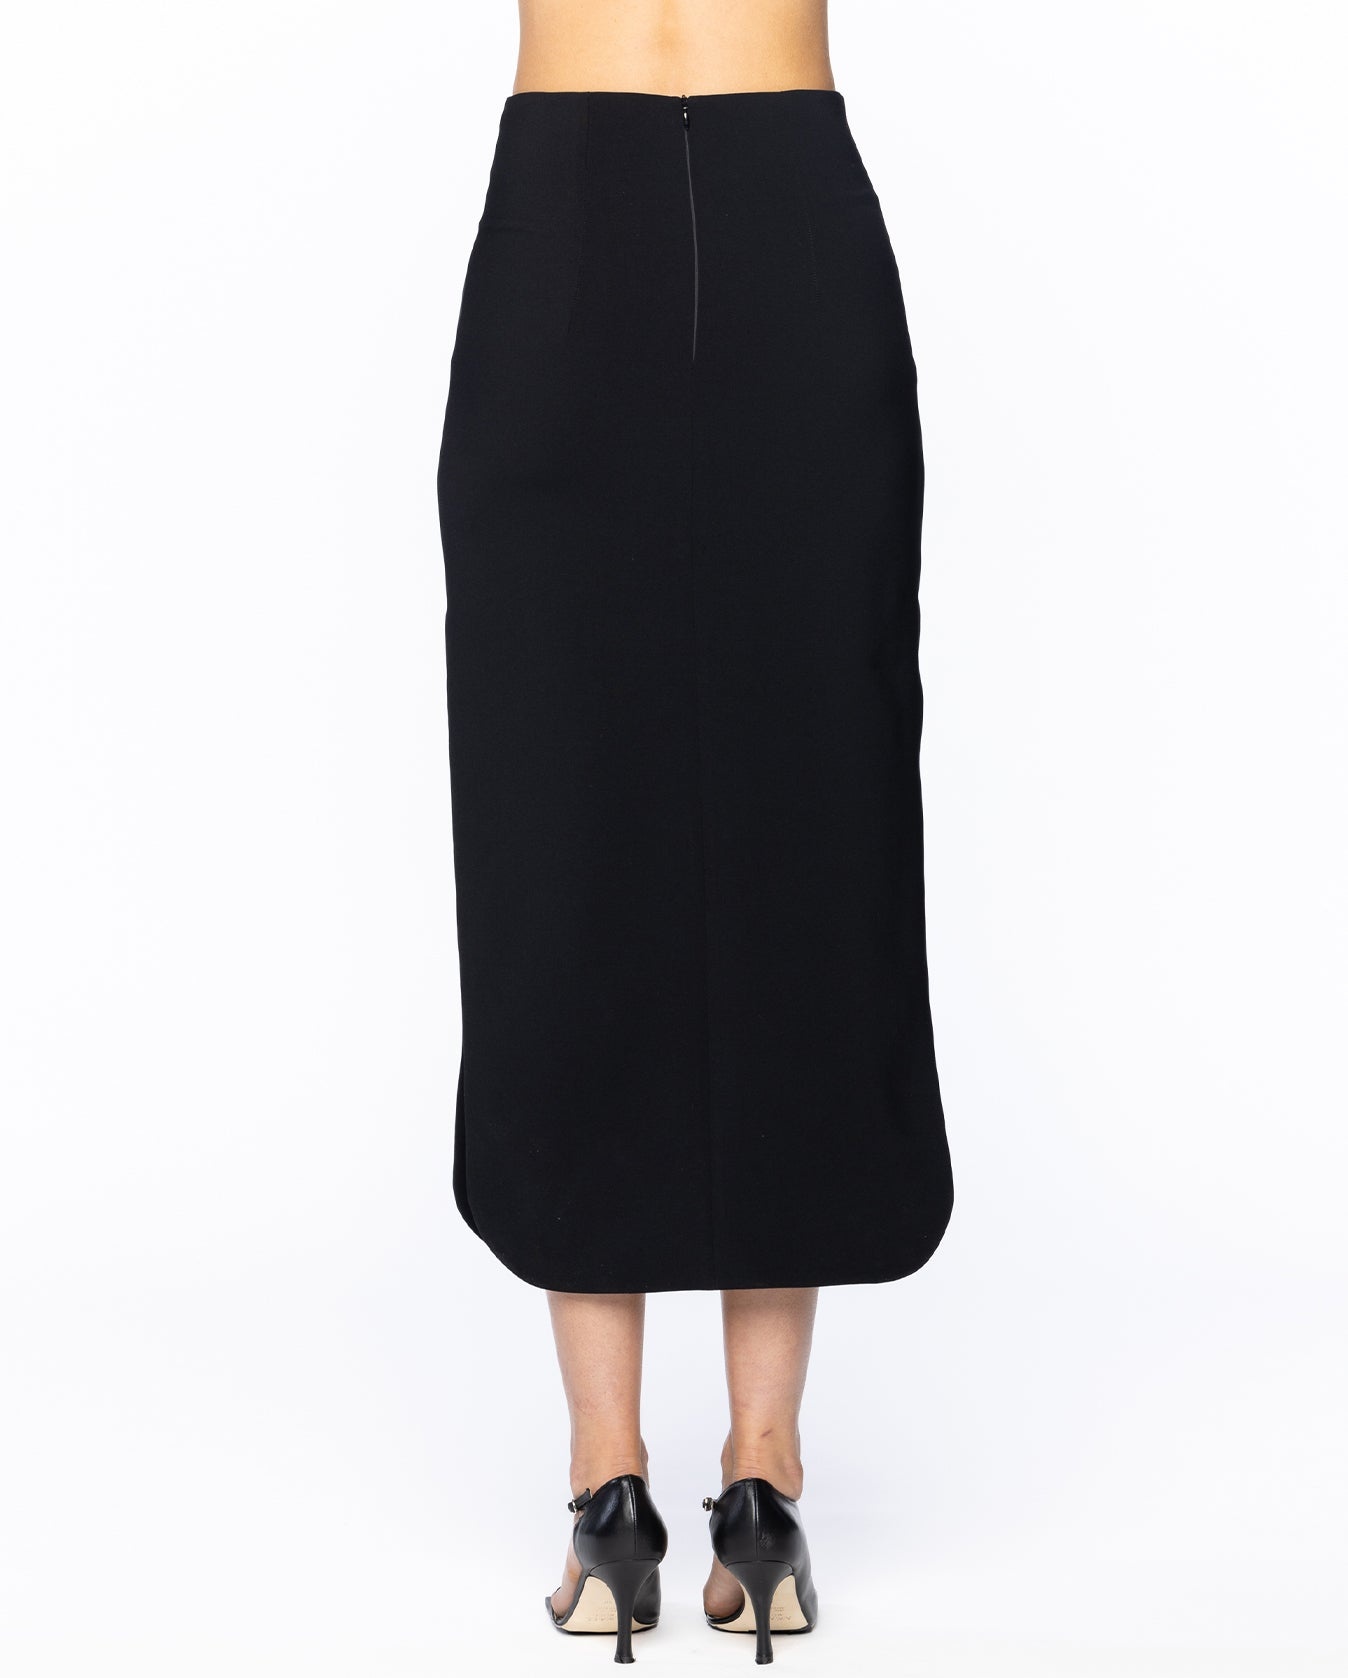 Maxi Skirt With Weaved Frame Insert - 6